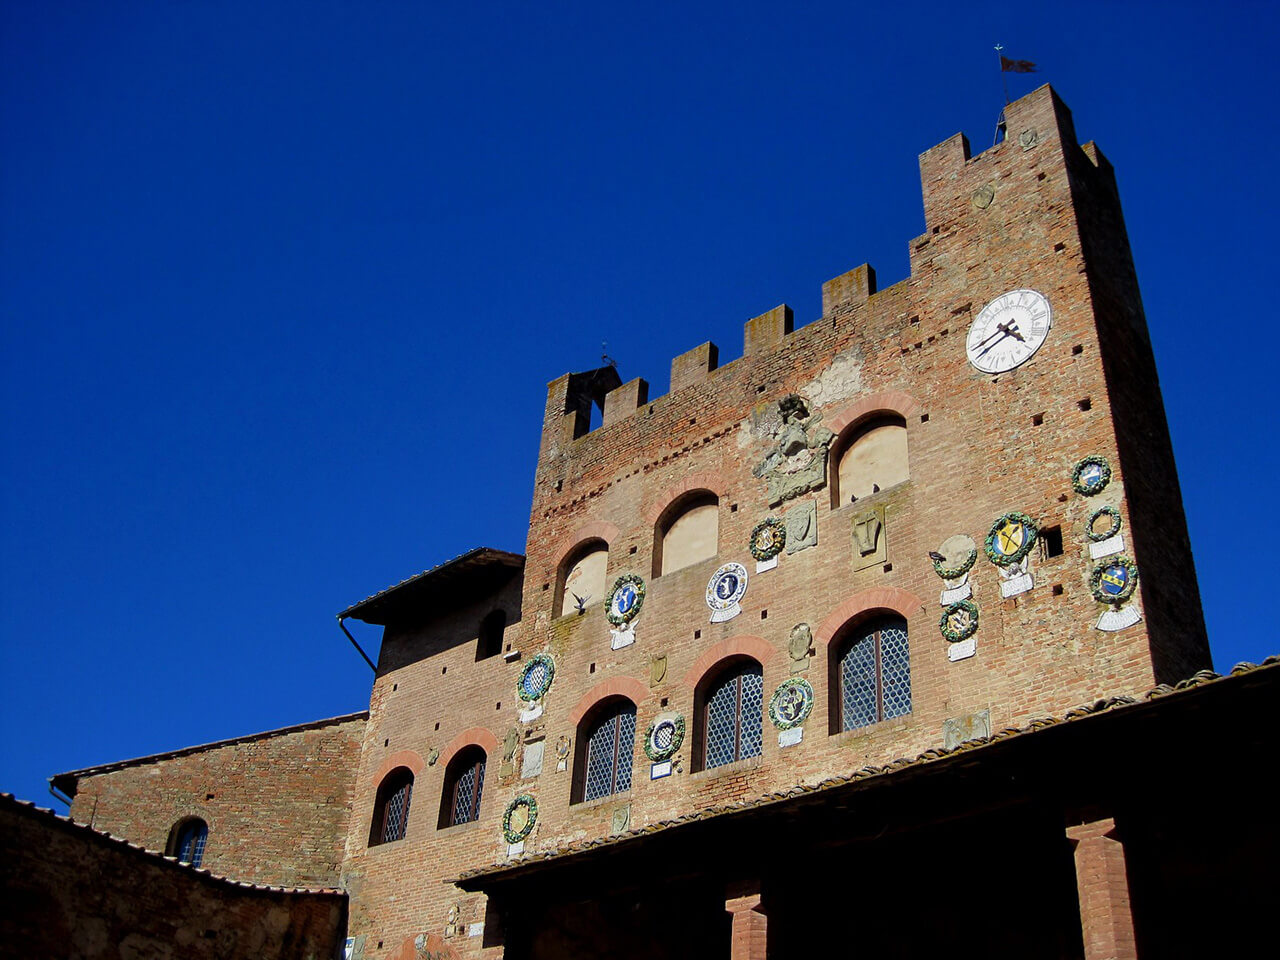 Palazzo Pretorio in Certaldo (Tuscany)